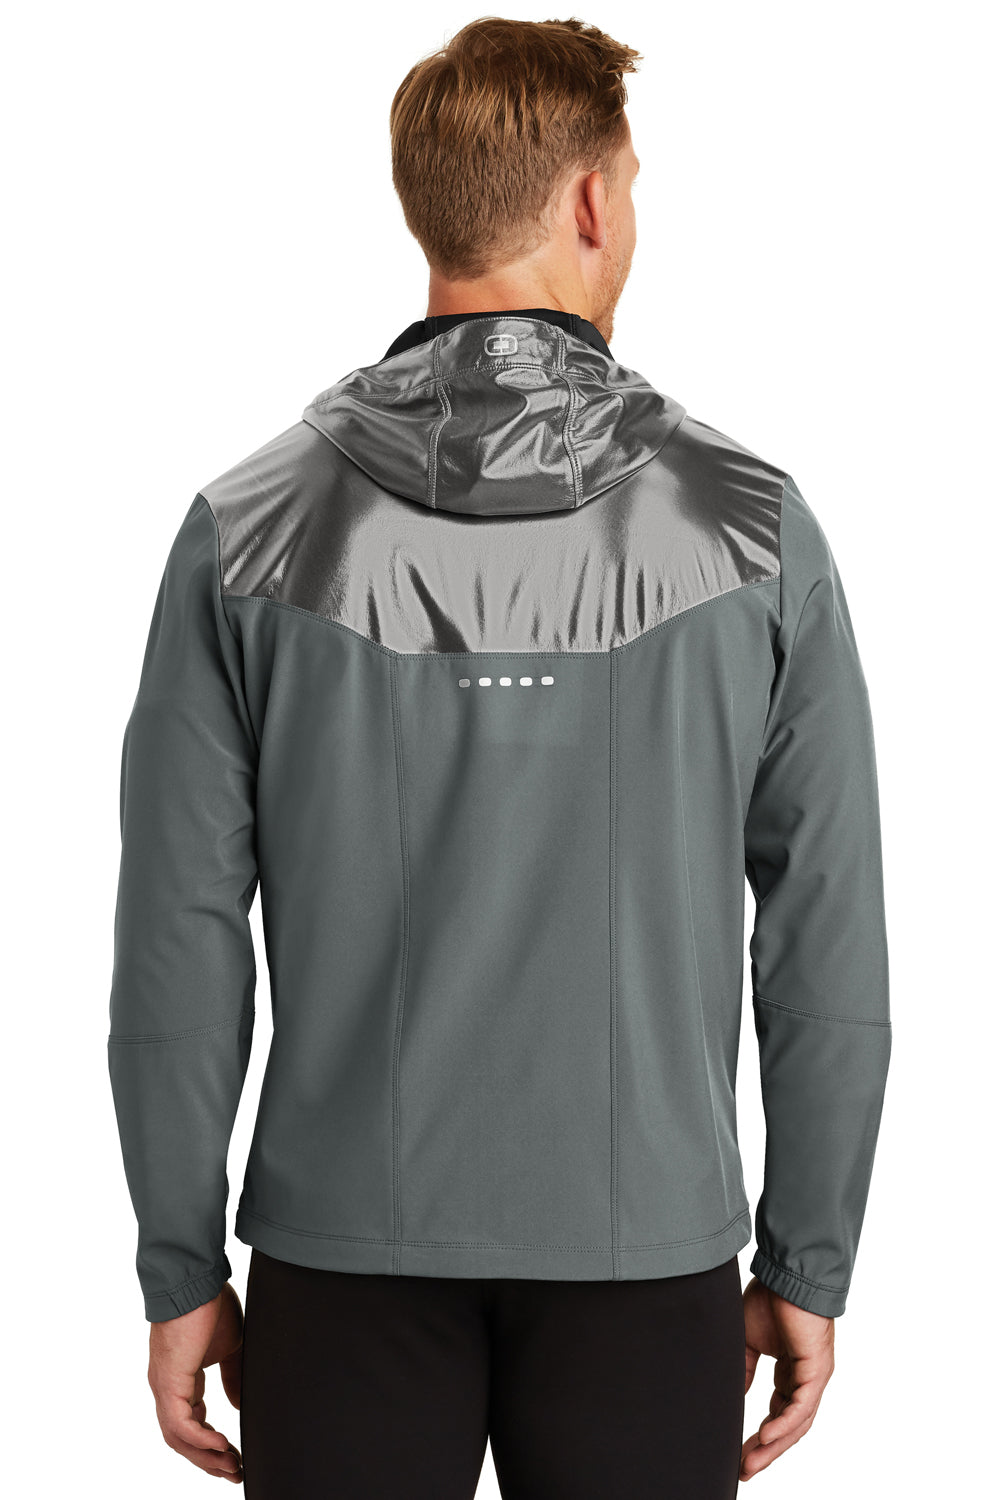 Ogio OE723 Mens Endurance Liquid Wind & Water Resistant Full Zip Hooded Jacket Diesel Grey Back